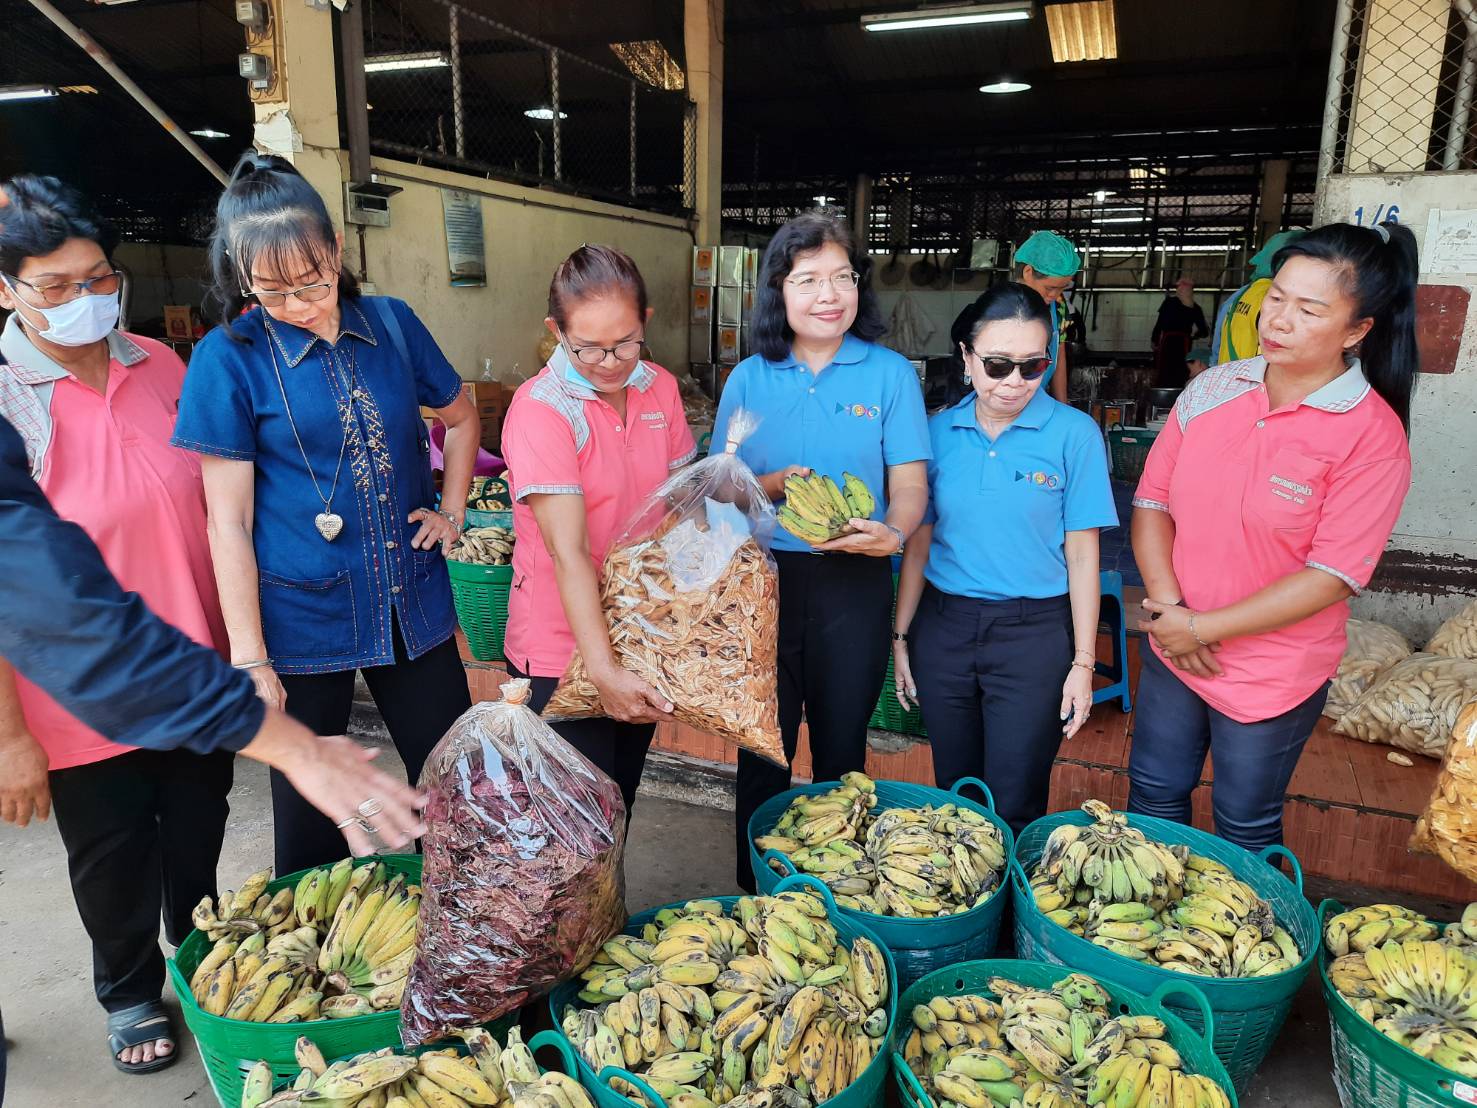 ‘กรมเจรจาฯ’ ลงพื้นที่สุโขทัย แนะเกษตรกรใช้ประโยชน์จาก FTA เพิ่มส่งออกกล้วยสด-แปรรูป สร้างรายได้ช่วงโควิด-19